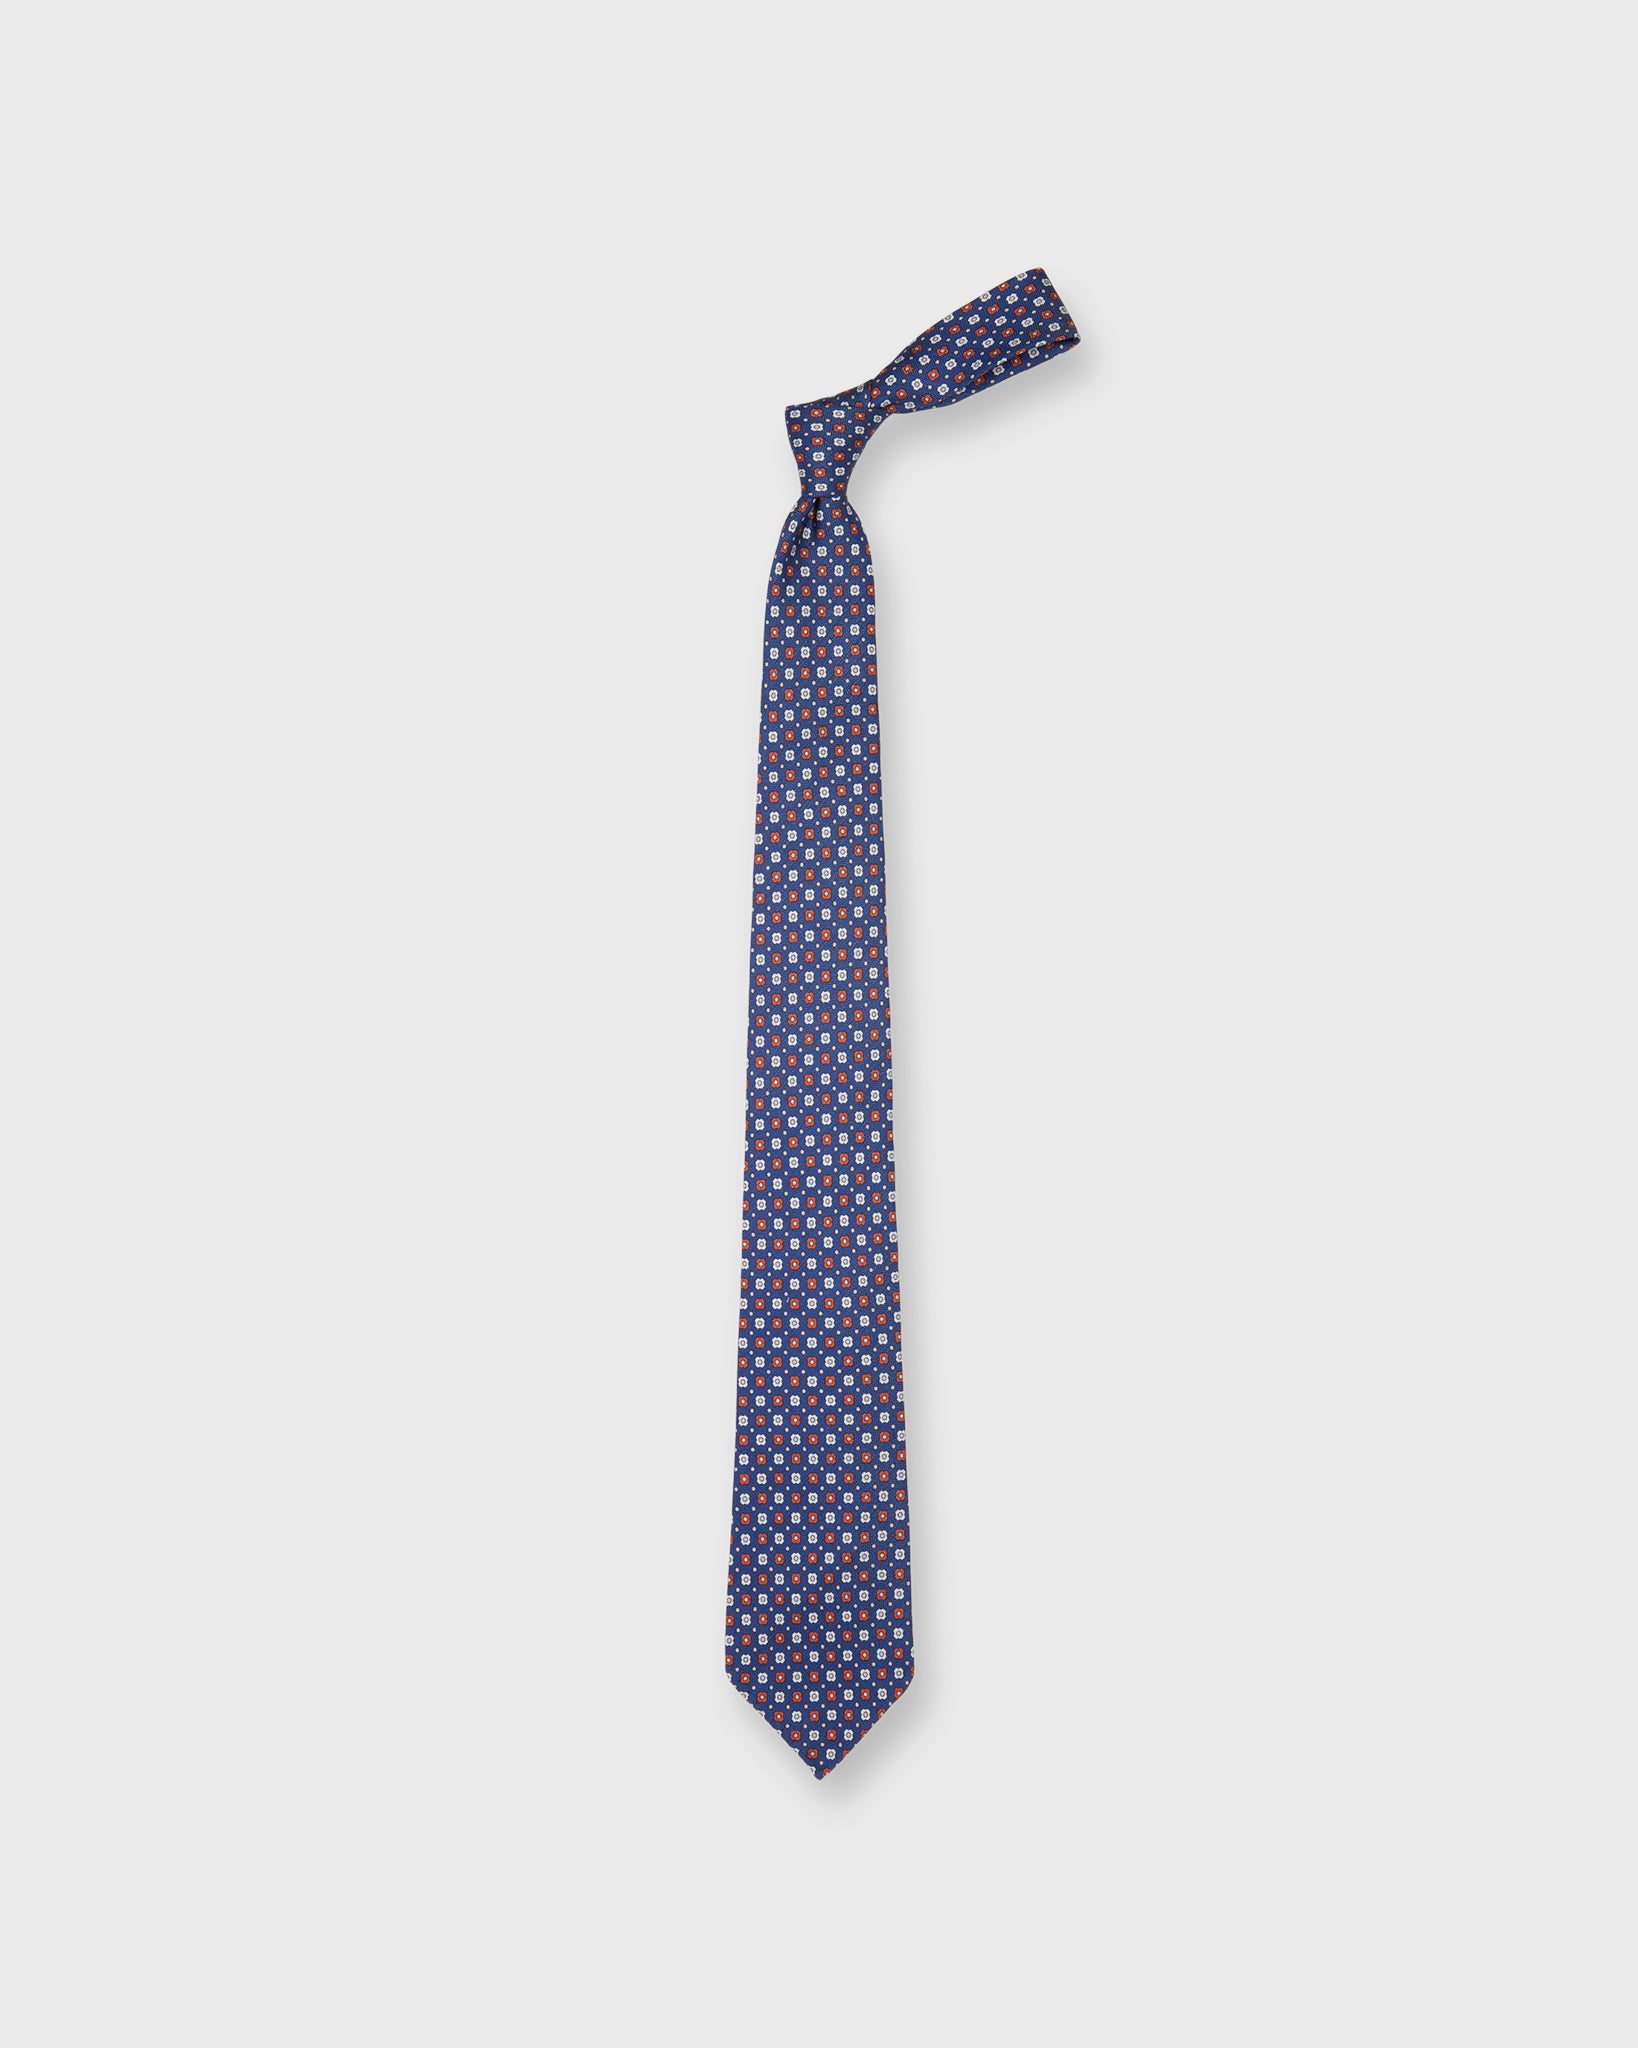 Silk/Linen Print Tie in Dark Blue/Peach Medallions